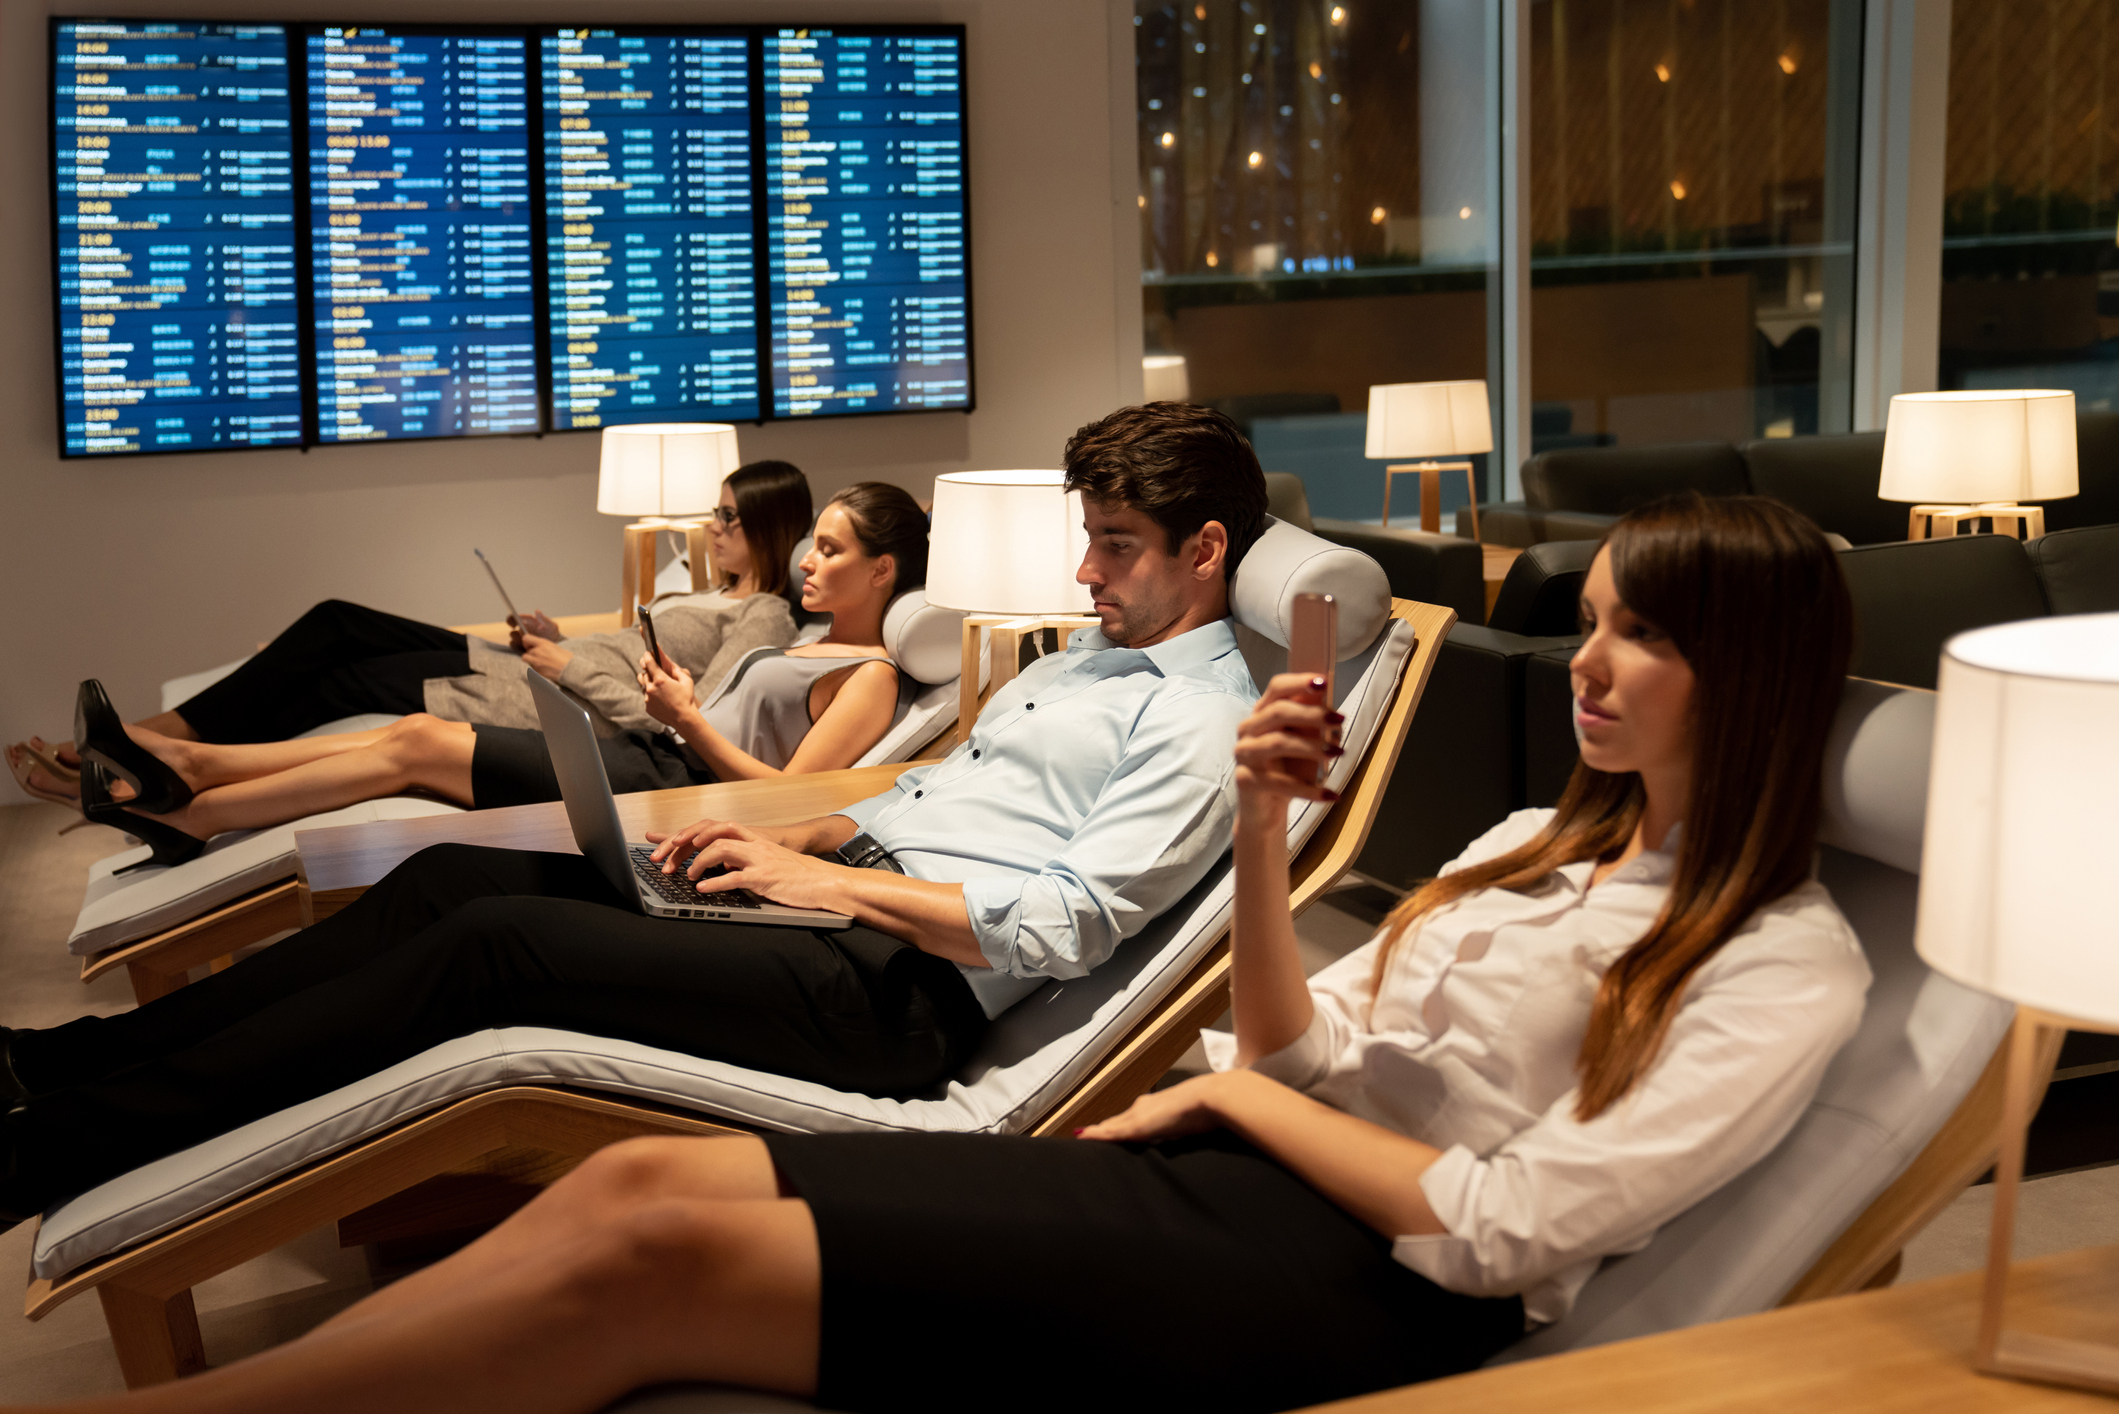 Smart klædte forretningsrejsende slapper af i en VIP-lounge i en lufthavn og sidder med deres mobiltelefoner eller bærbare computere, mens de venter på deres fly